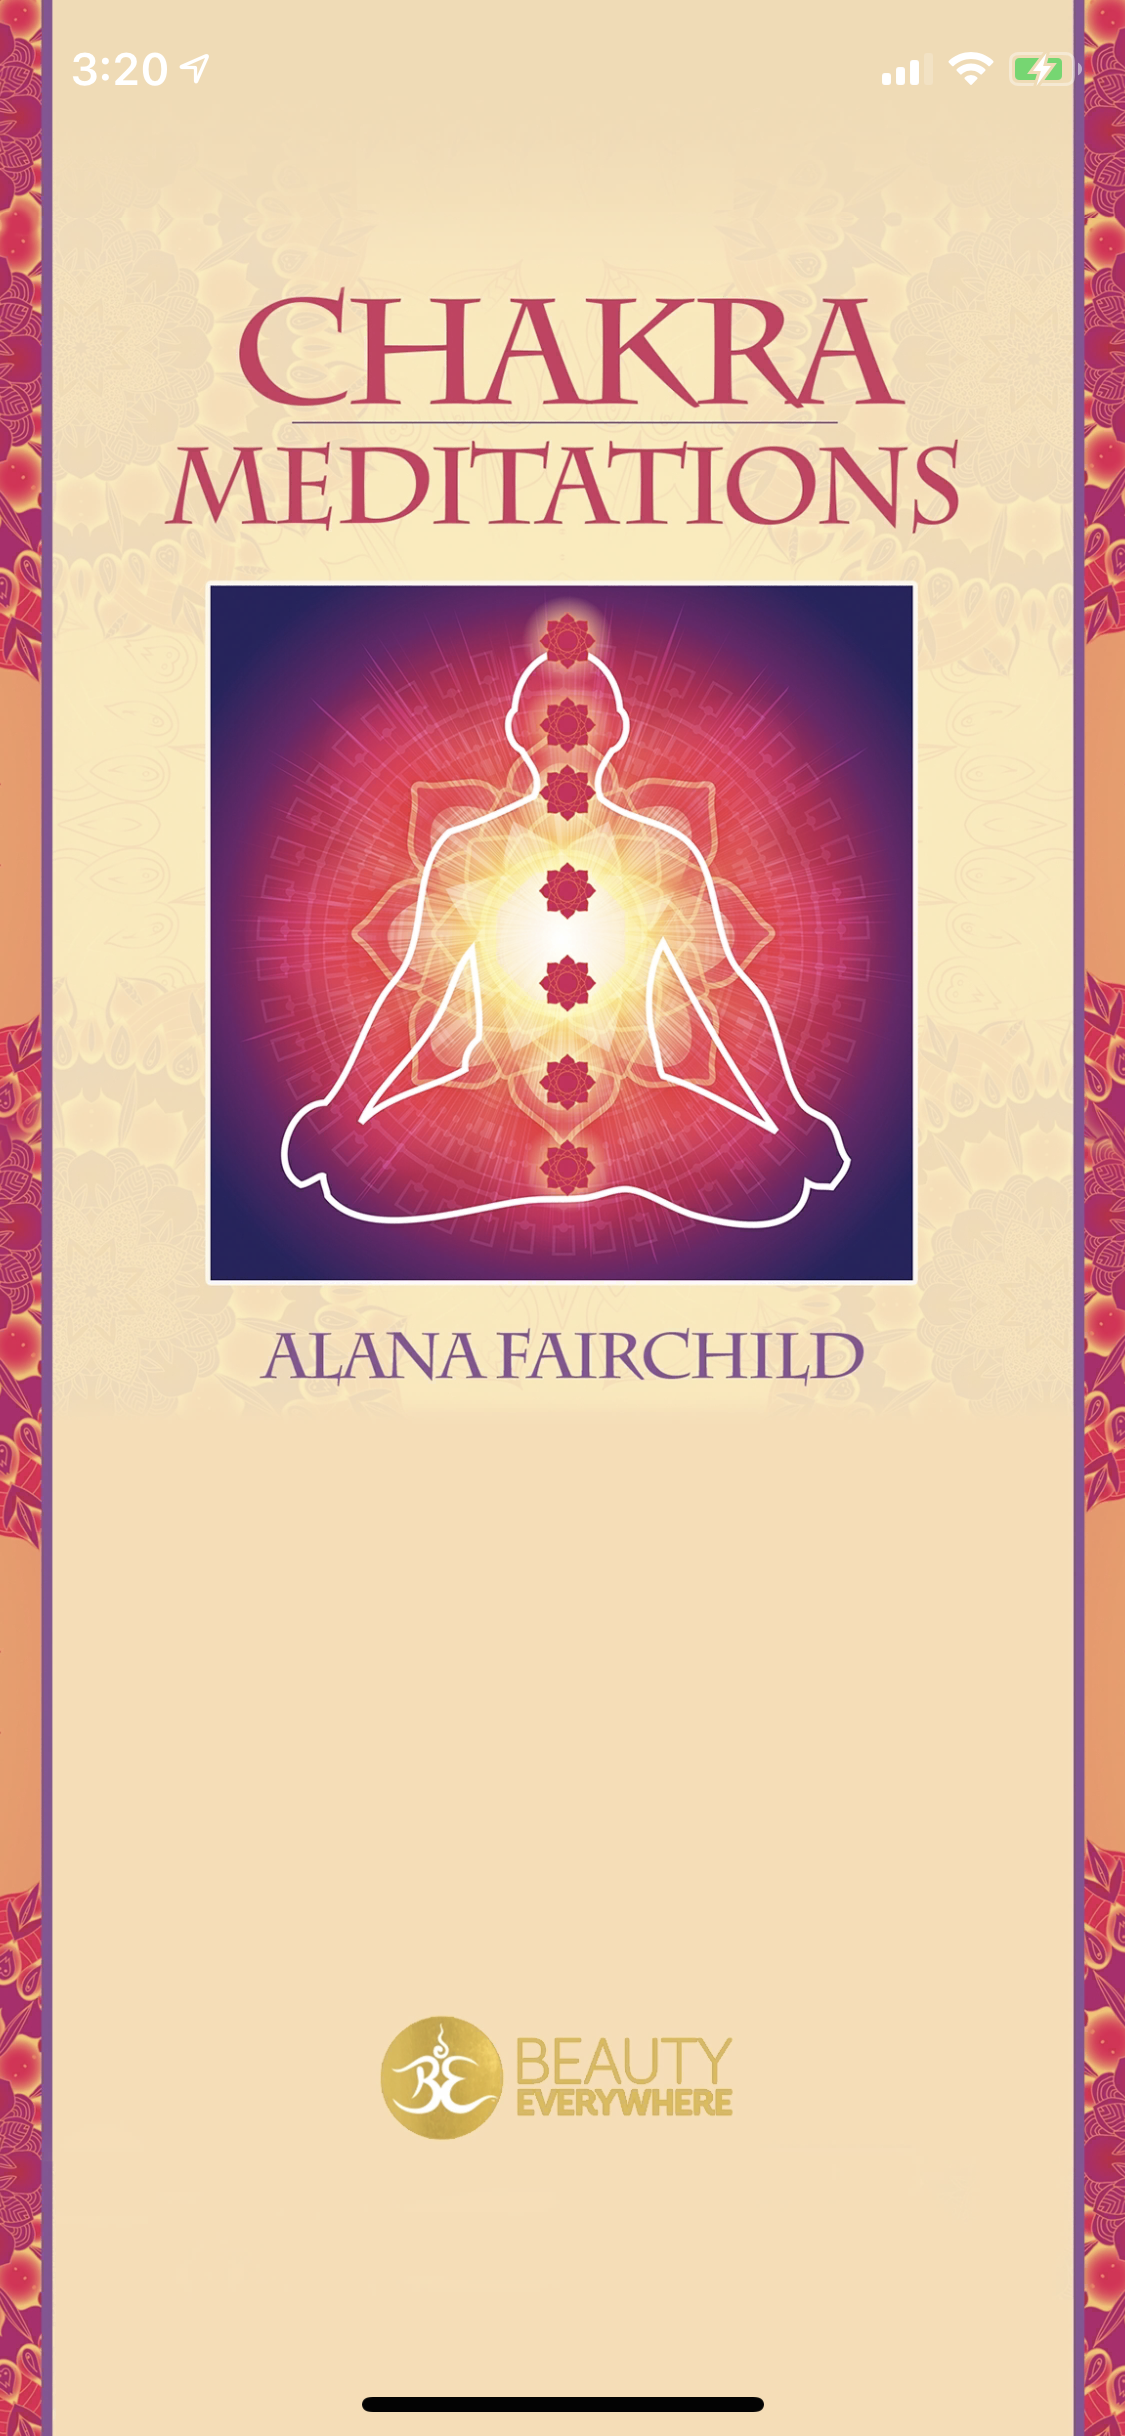 Chakra Meditations by Alana Fairchild